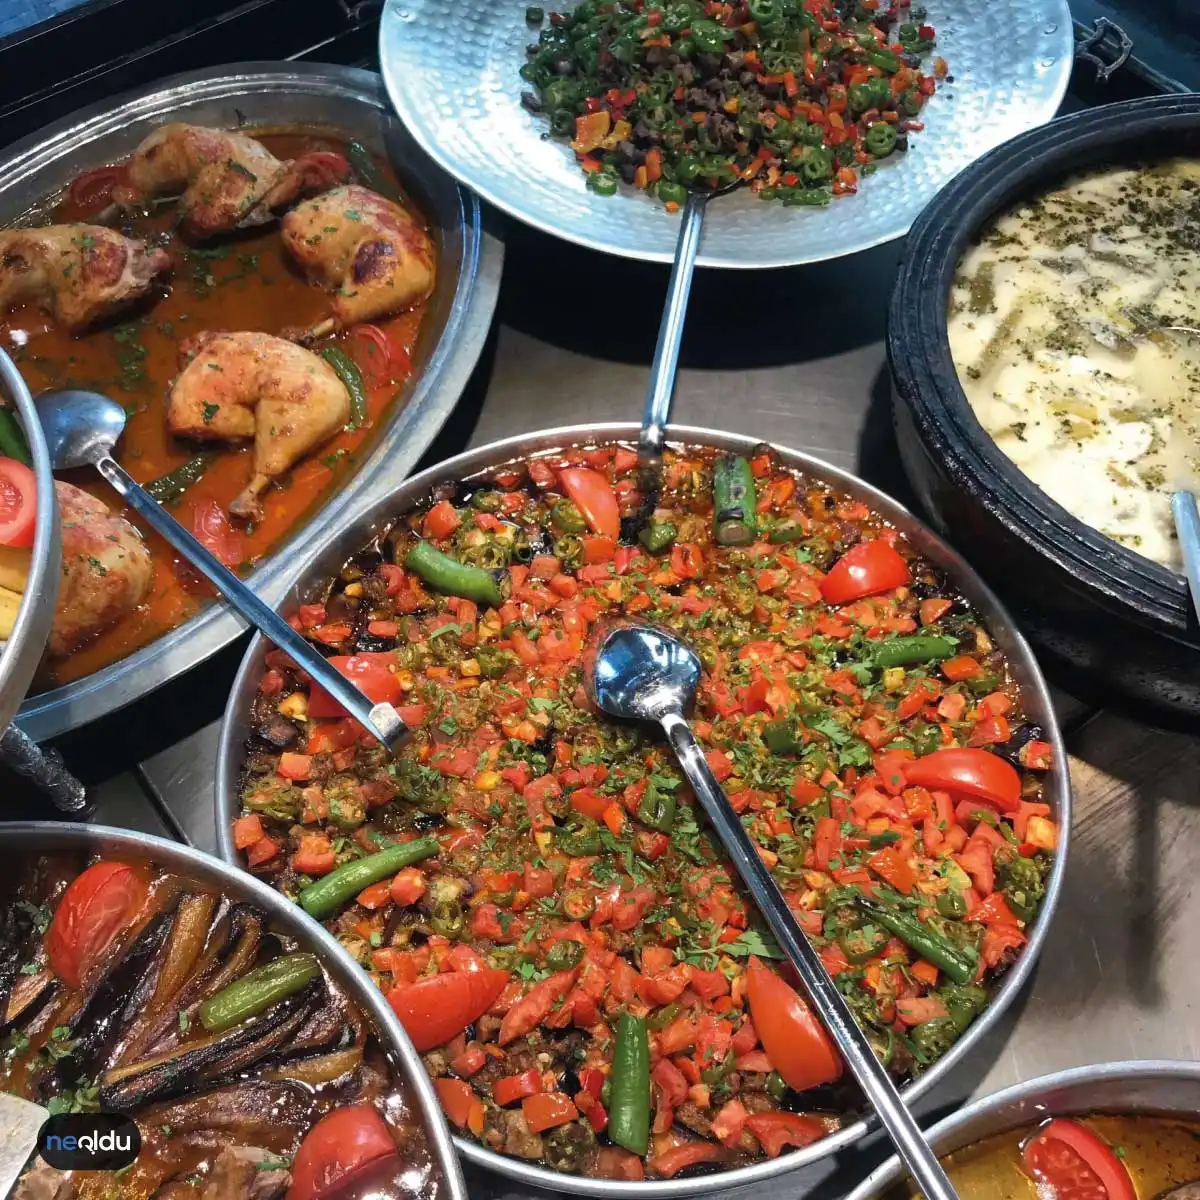 İstanbul'da Sulu Yemek Yenecek Restoranlar